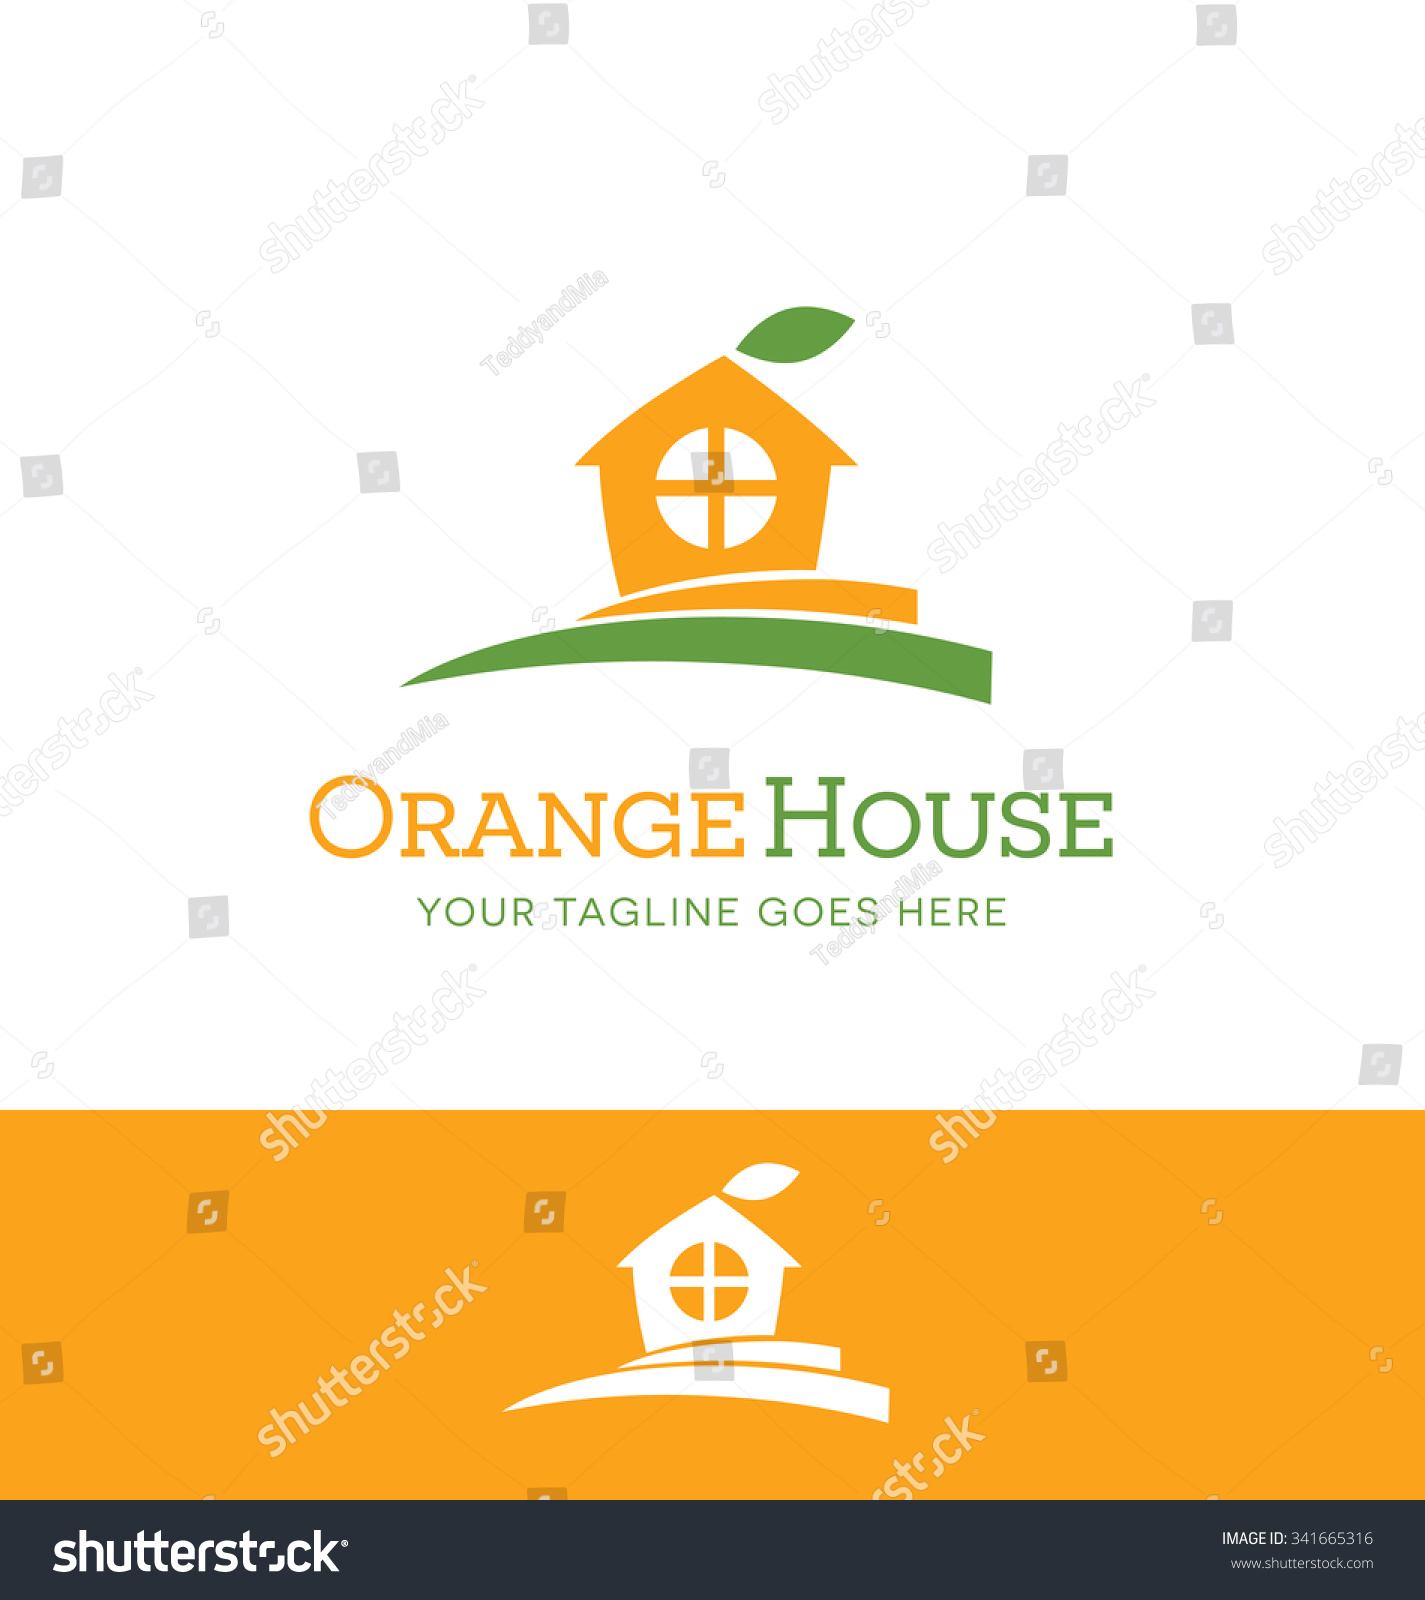 orange leaf business plan